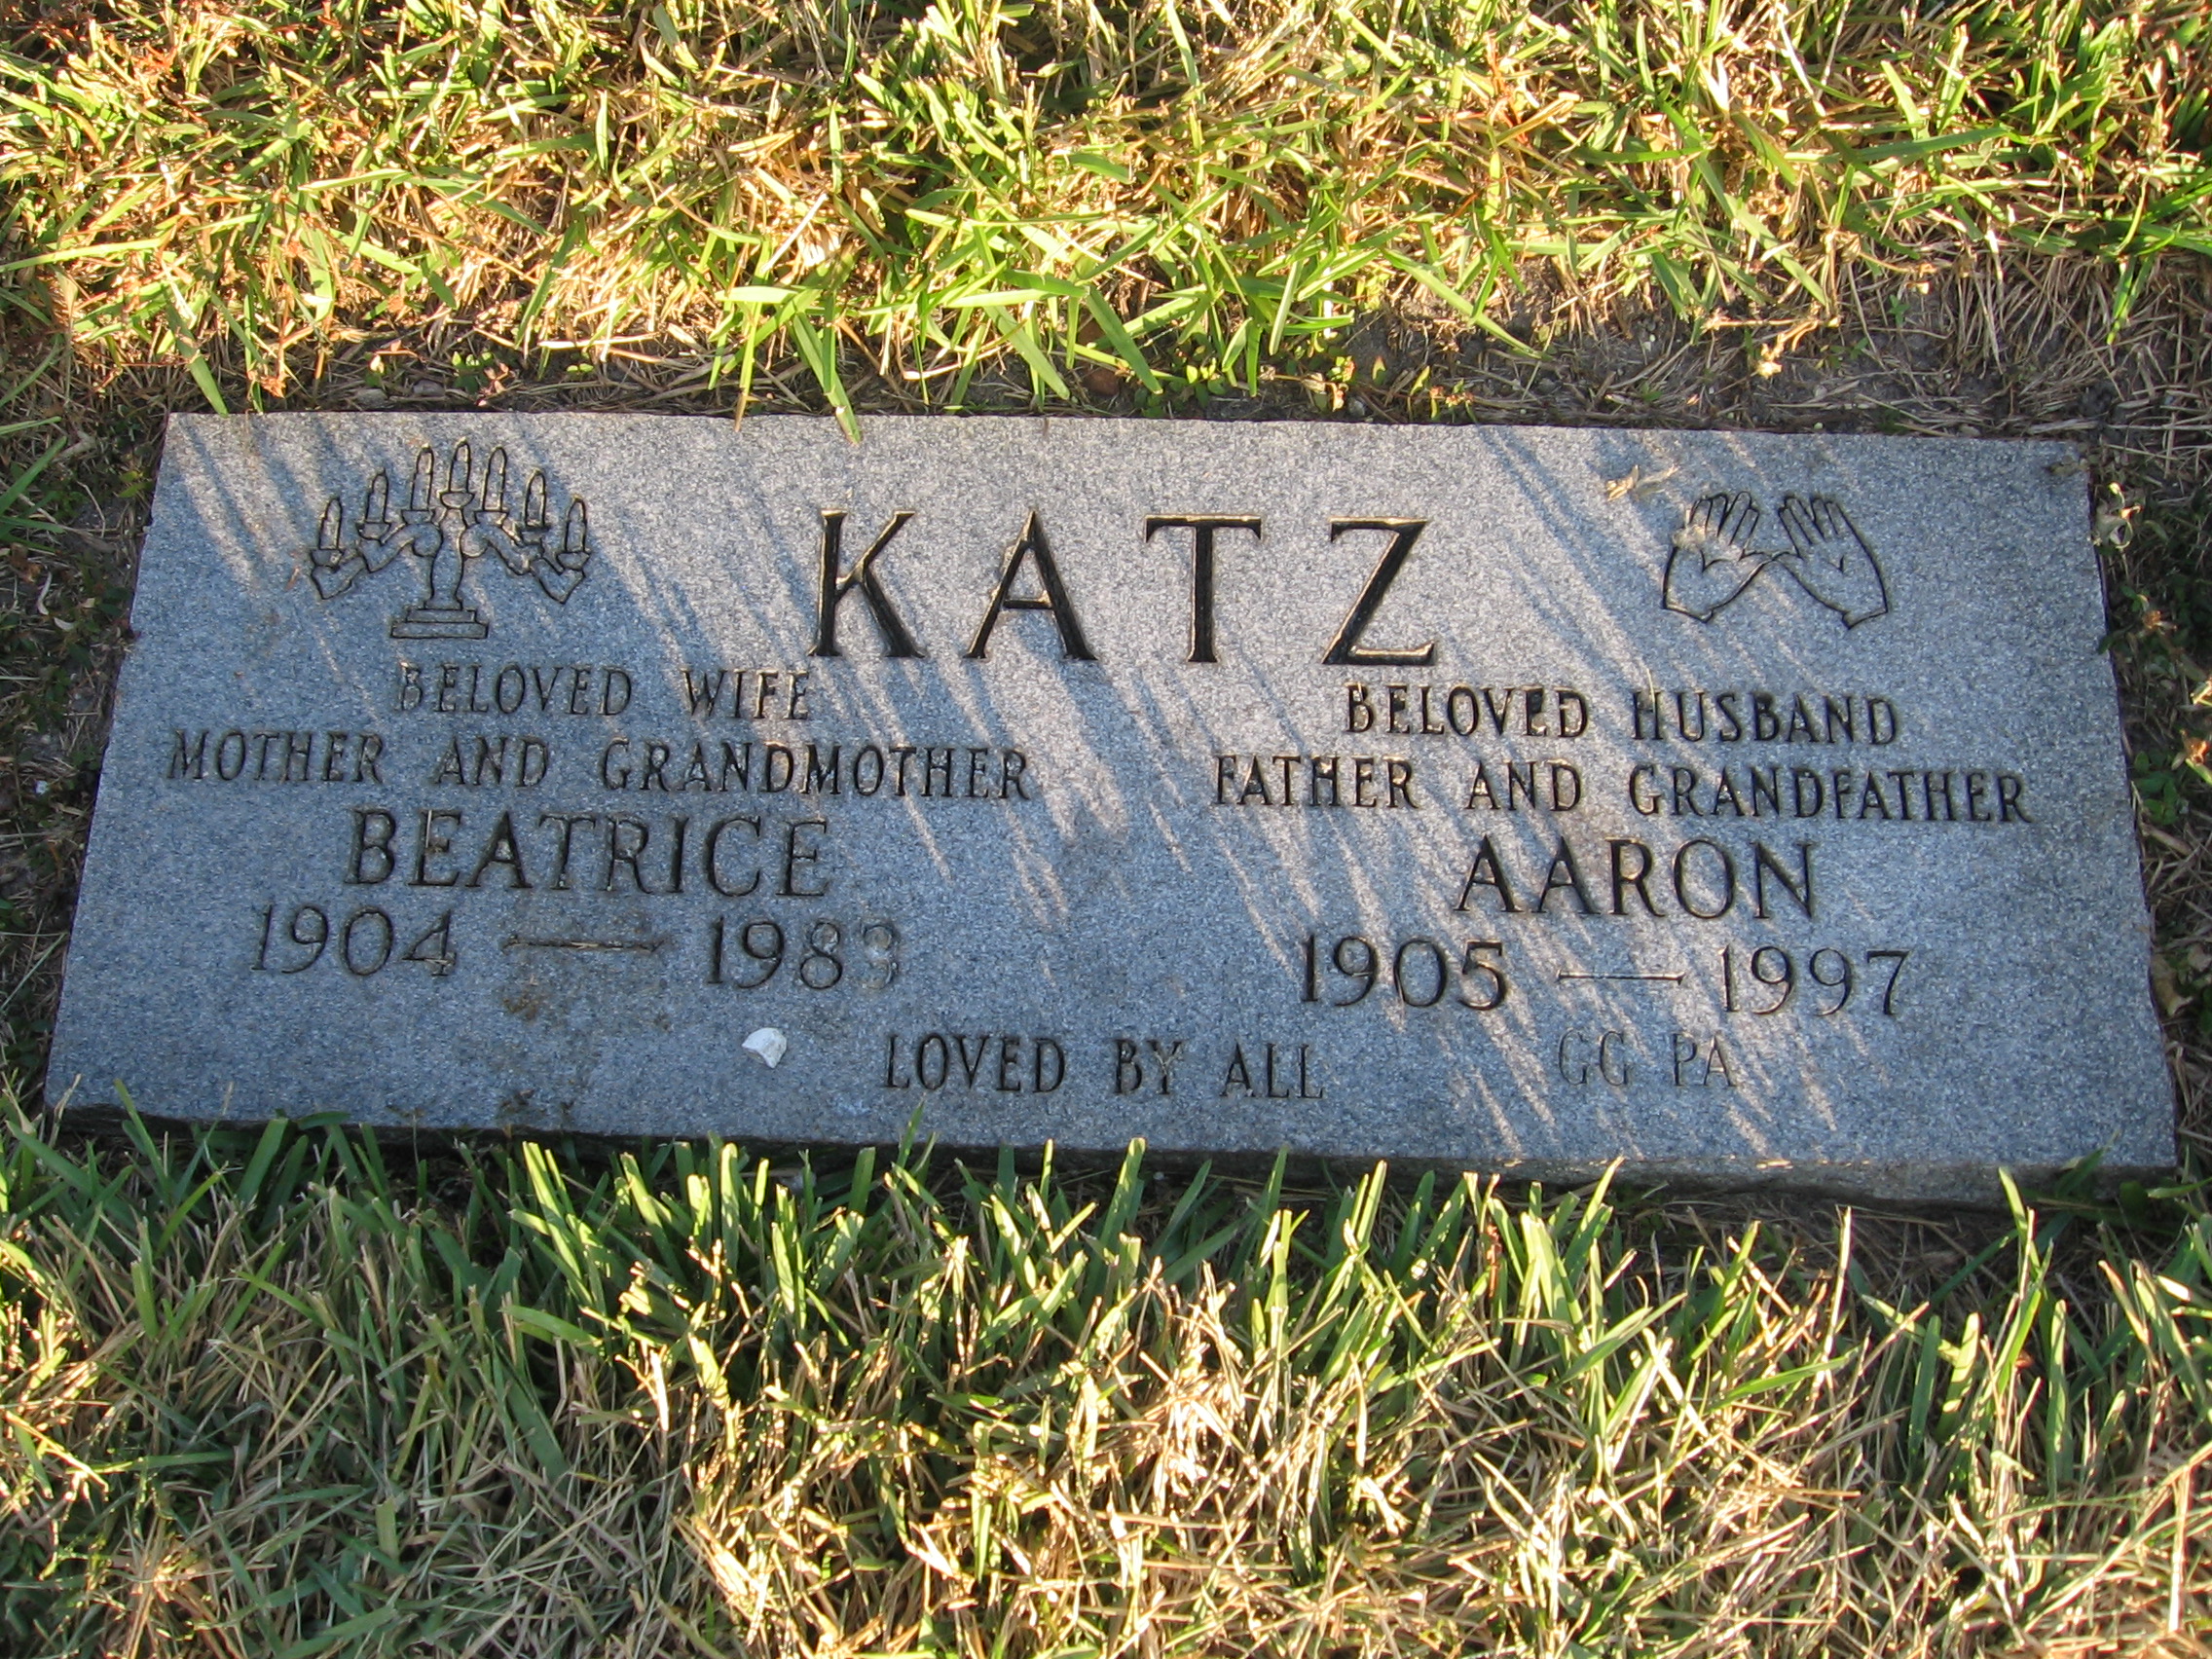 Beatrice Katz